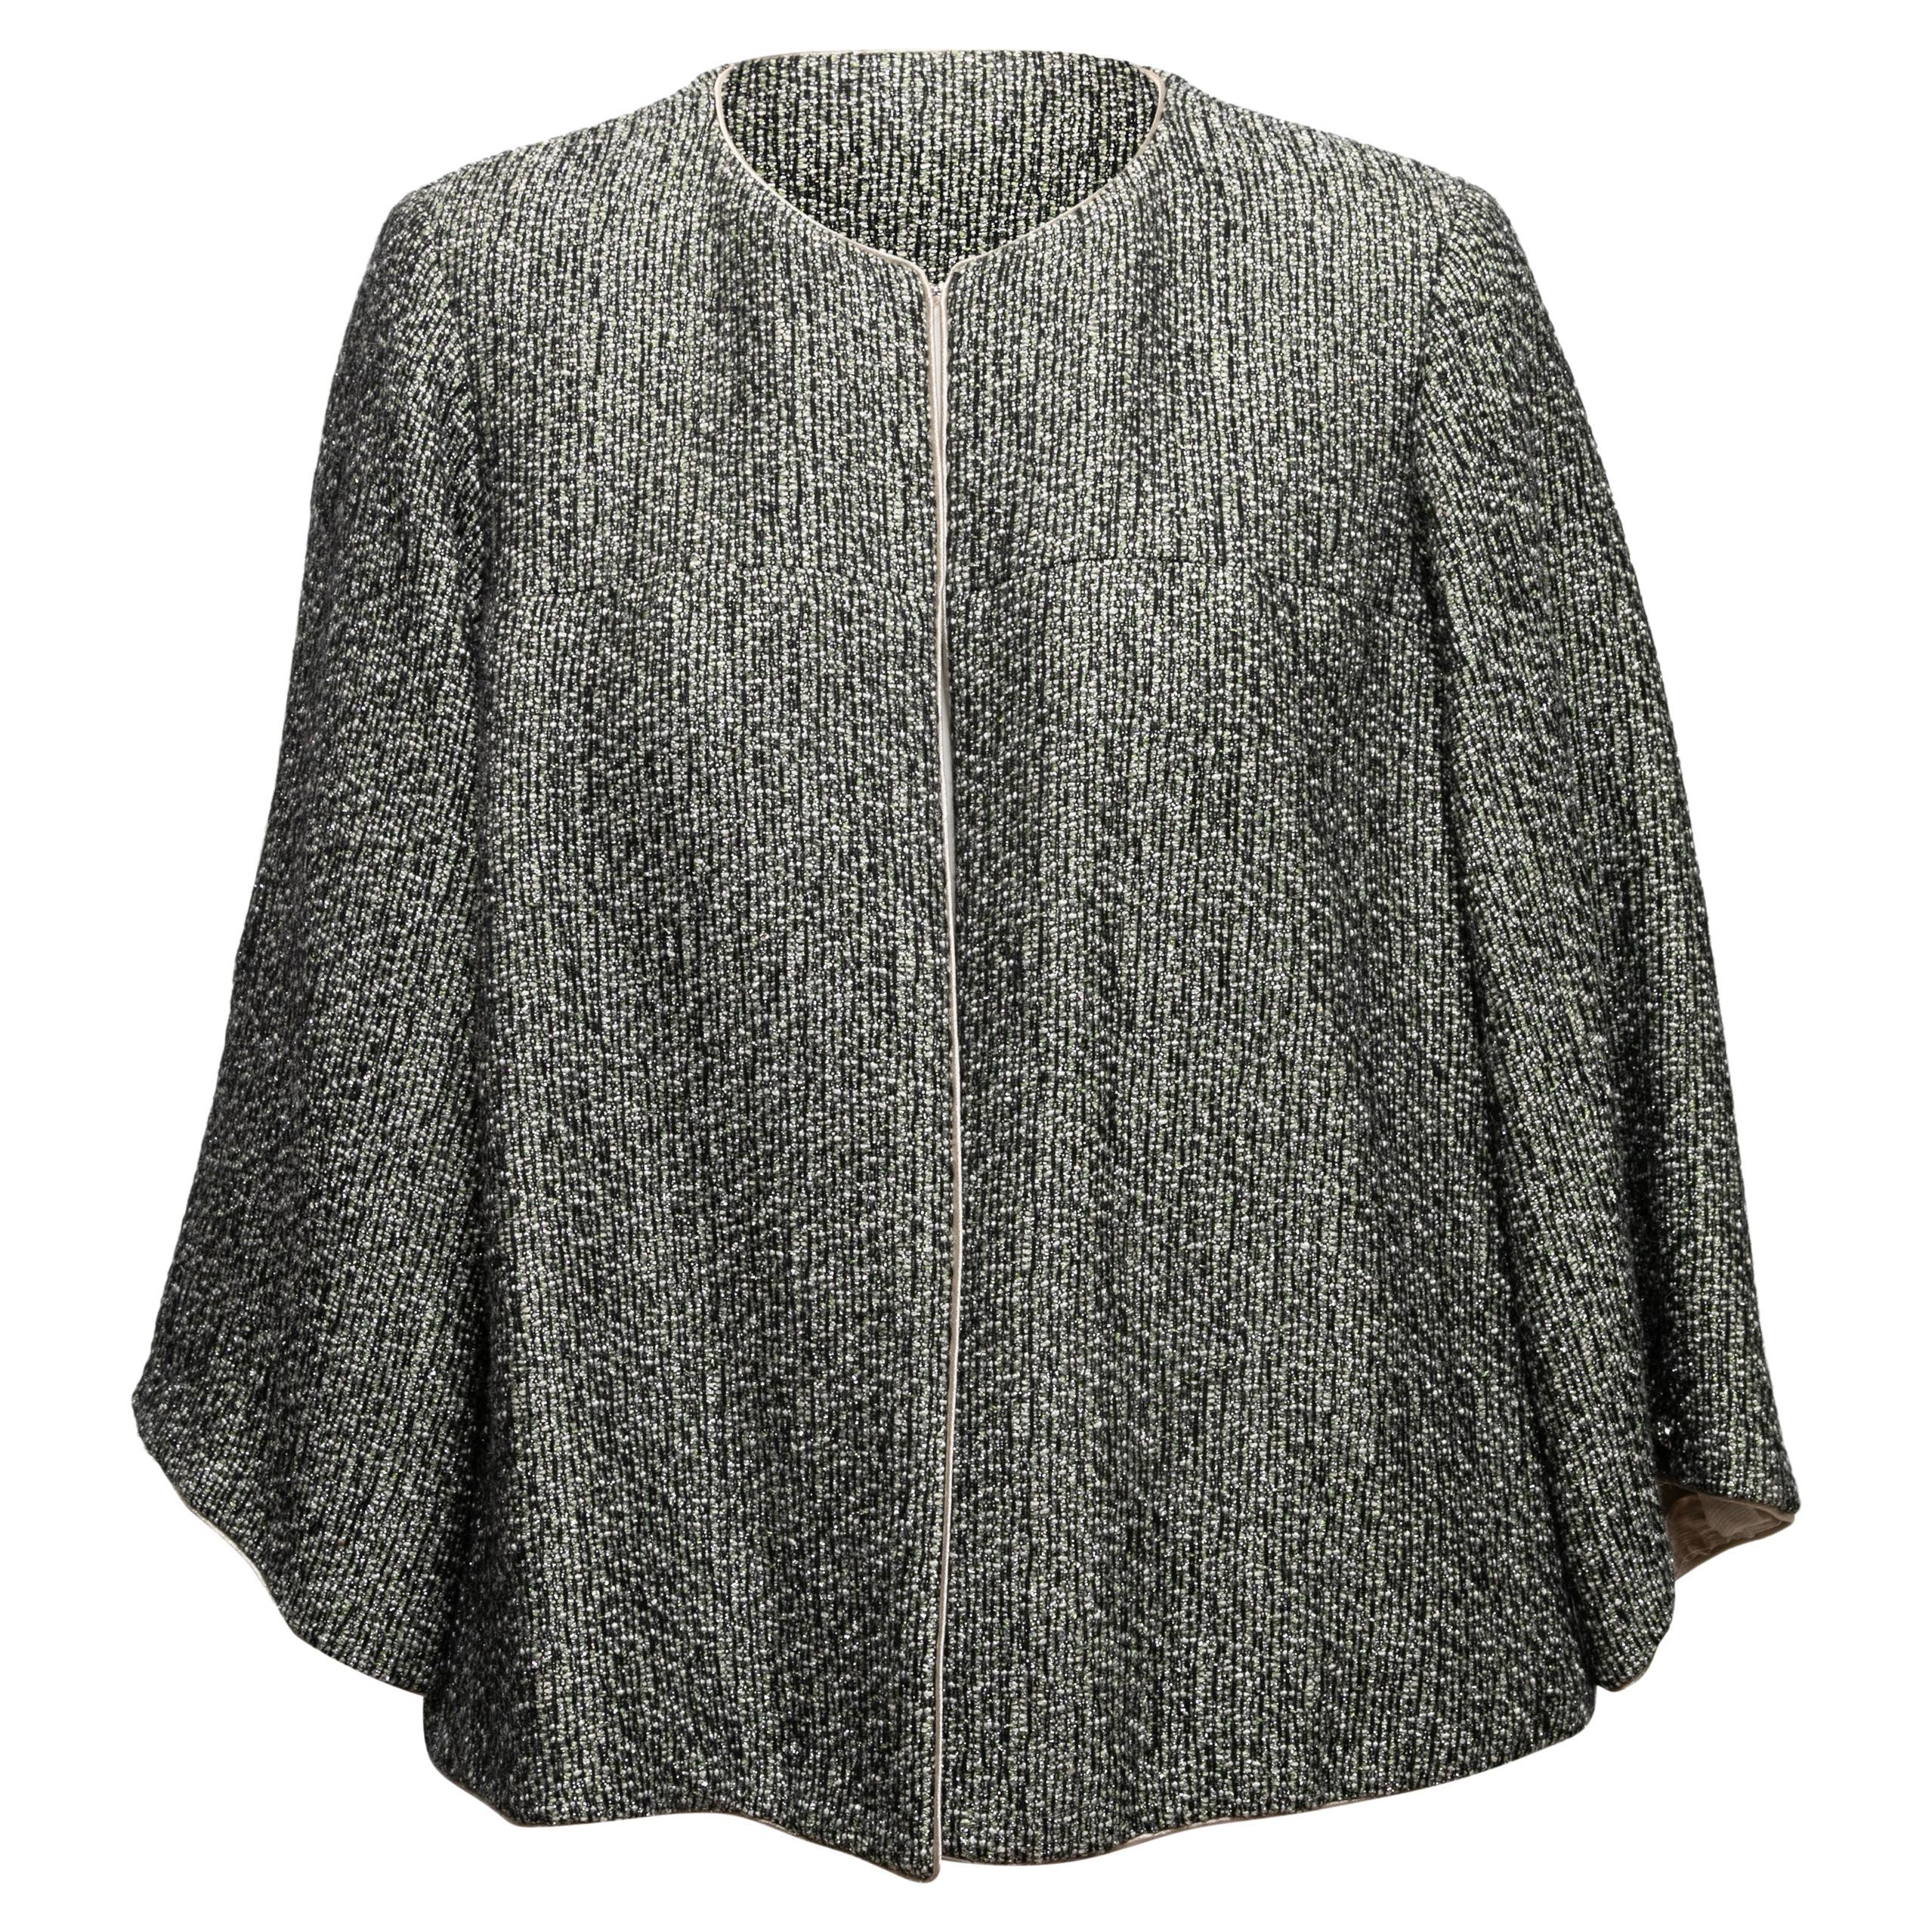 Black & Multicolor Chanel Alpaca-Blend Tweed Jacket Size FR 44 For Sale